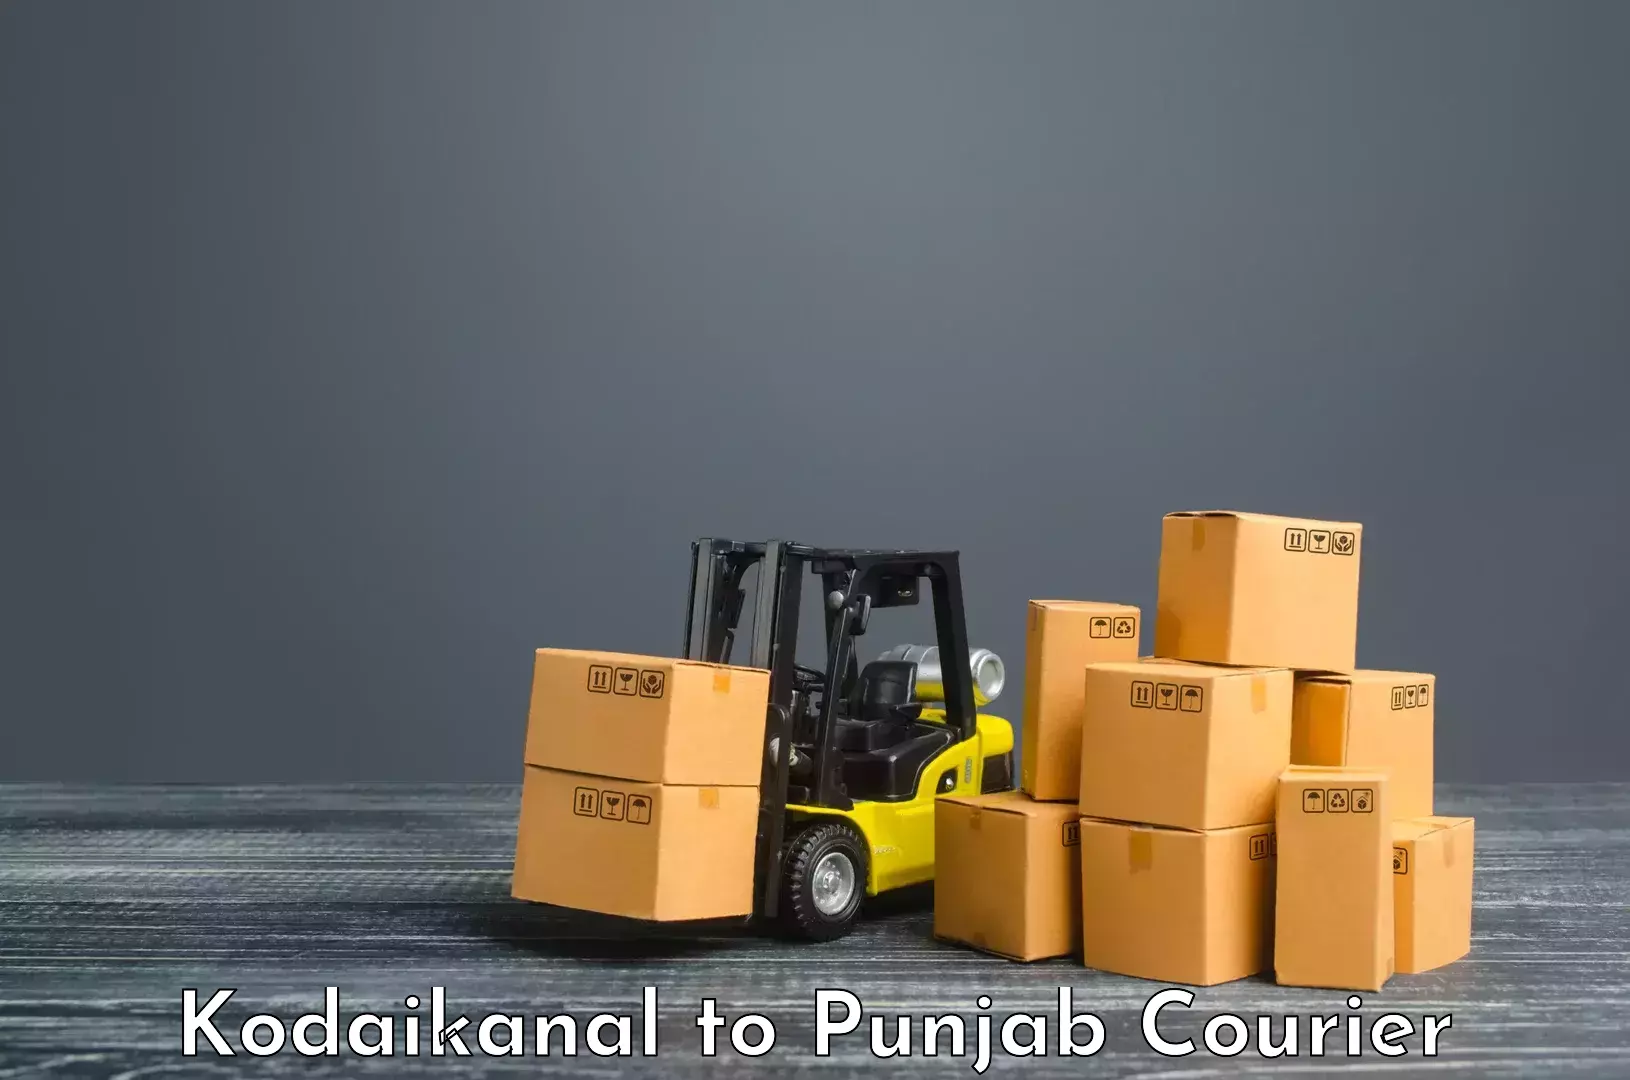 24-hour courier service Kodaikanal to Anandpur Sahib